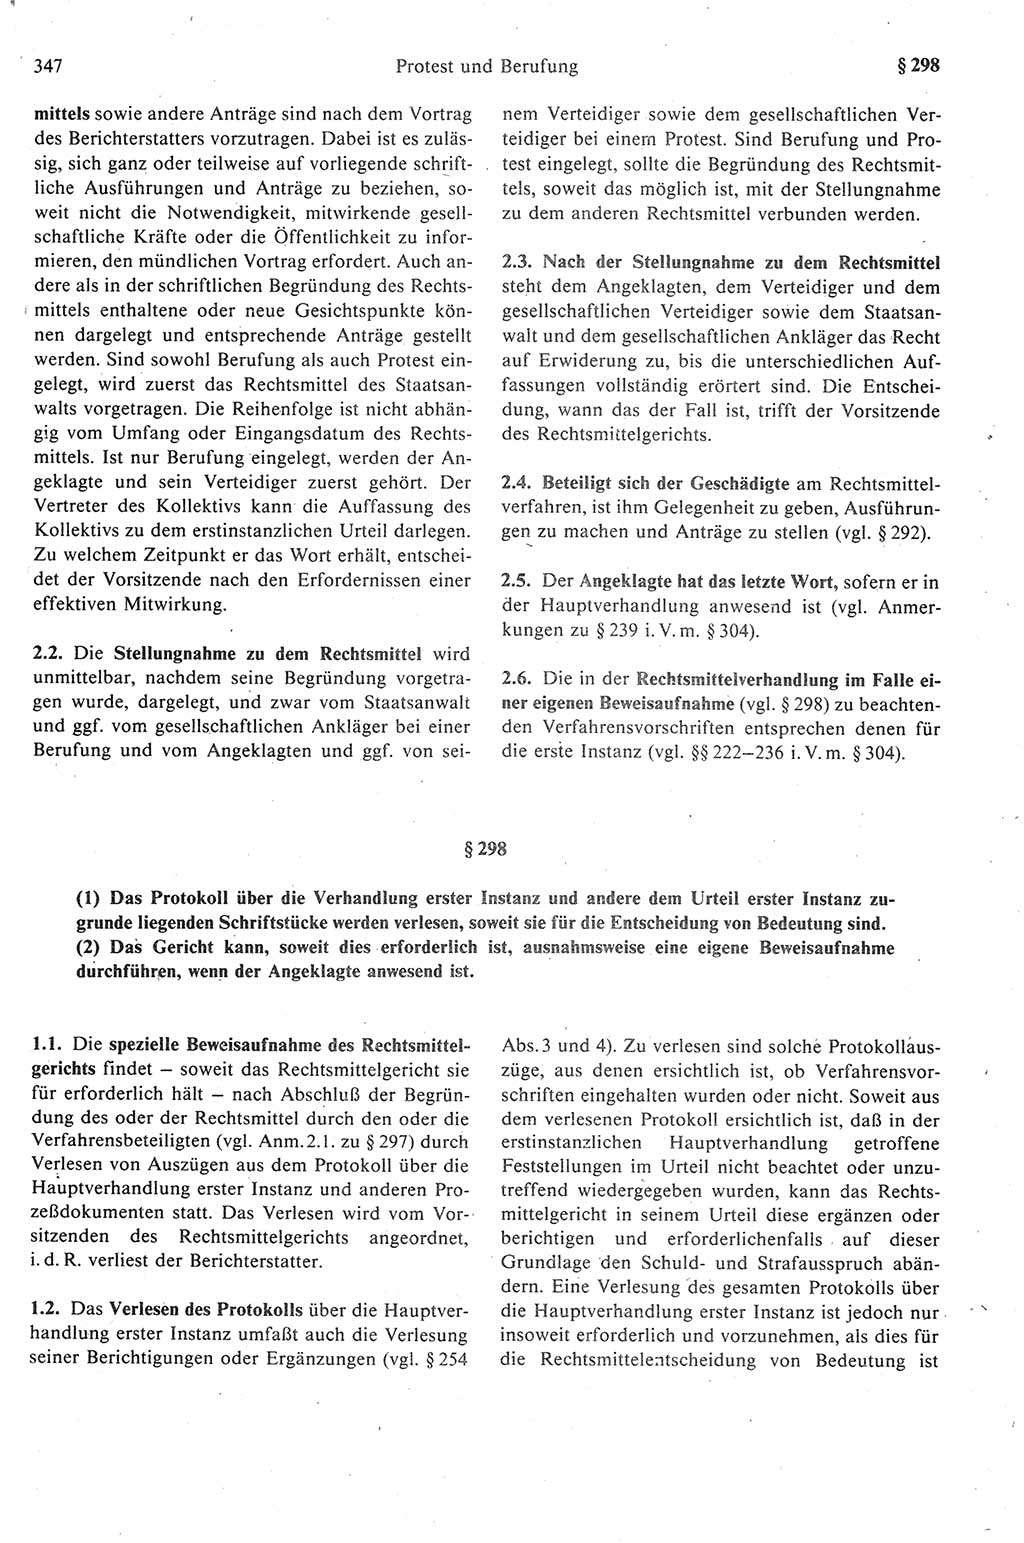 Strafprozeßrecht der DDR (Deutsche Demokratische Republik), Kommentar zur Strafprozeßordnung (StPO) 1989, Seite 347 (Strafprozeßr. DDR Komm. StPO 1989, S. 347)